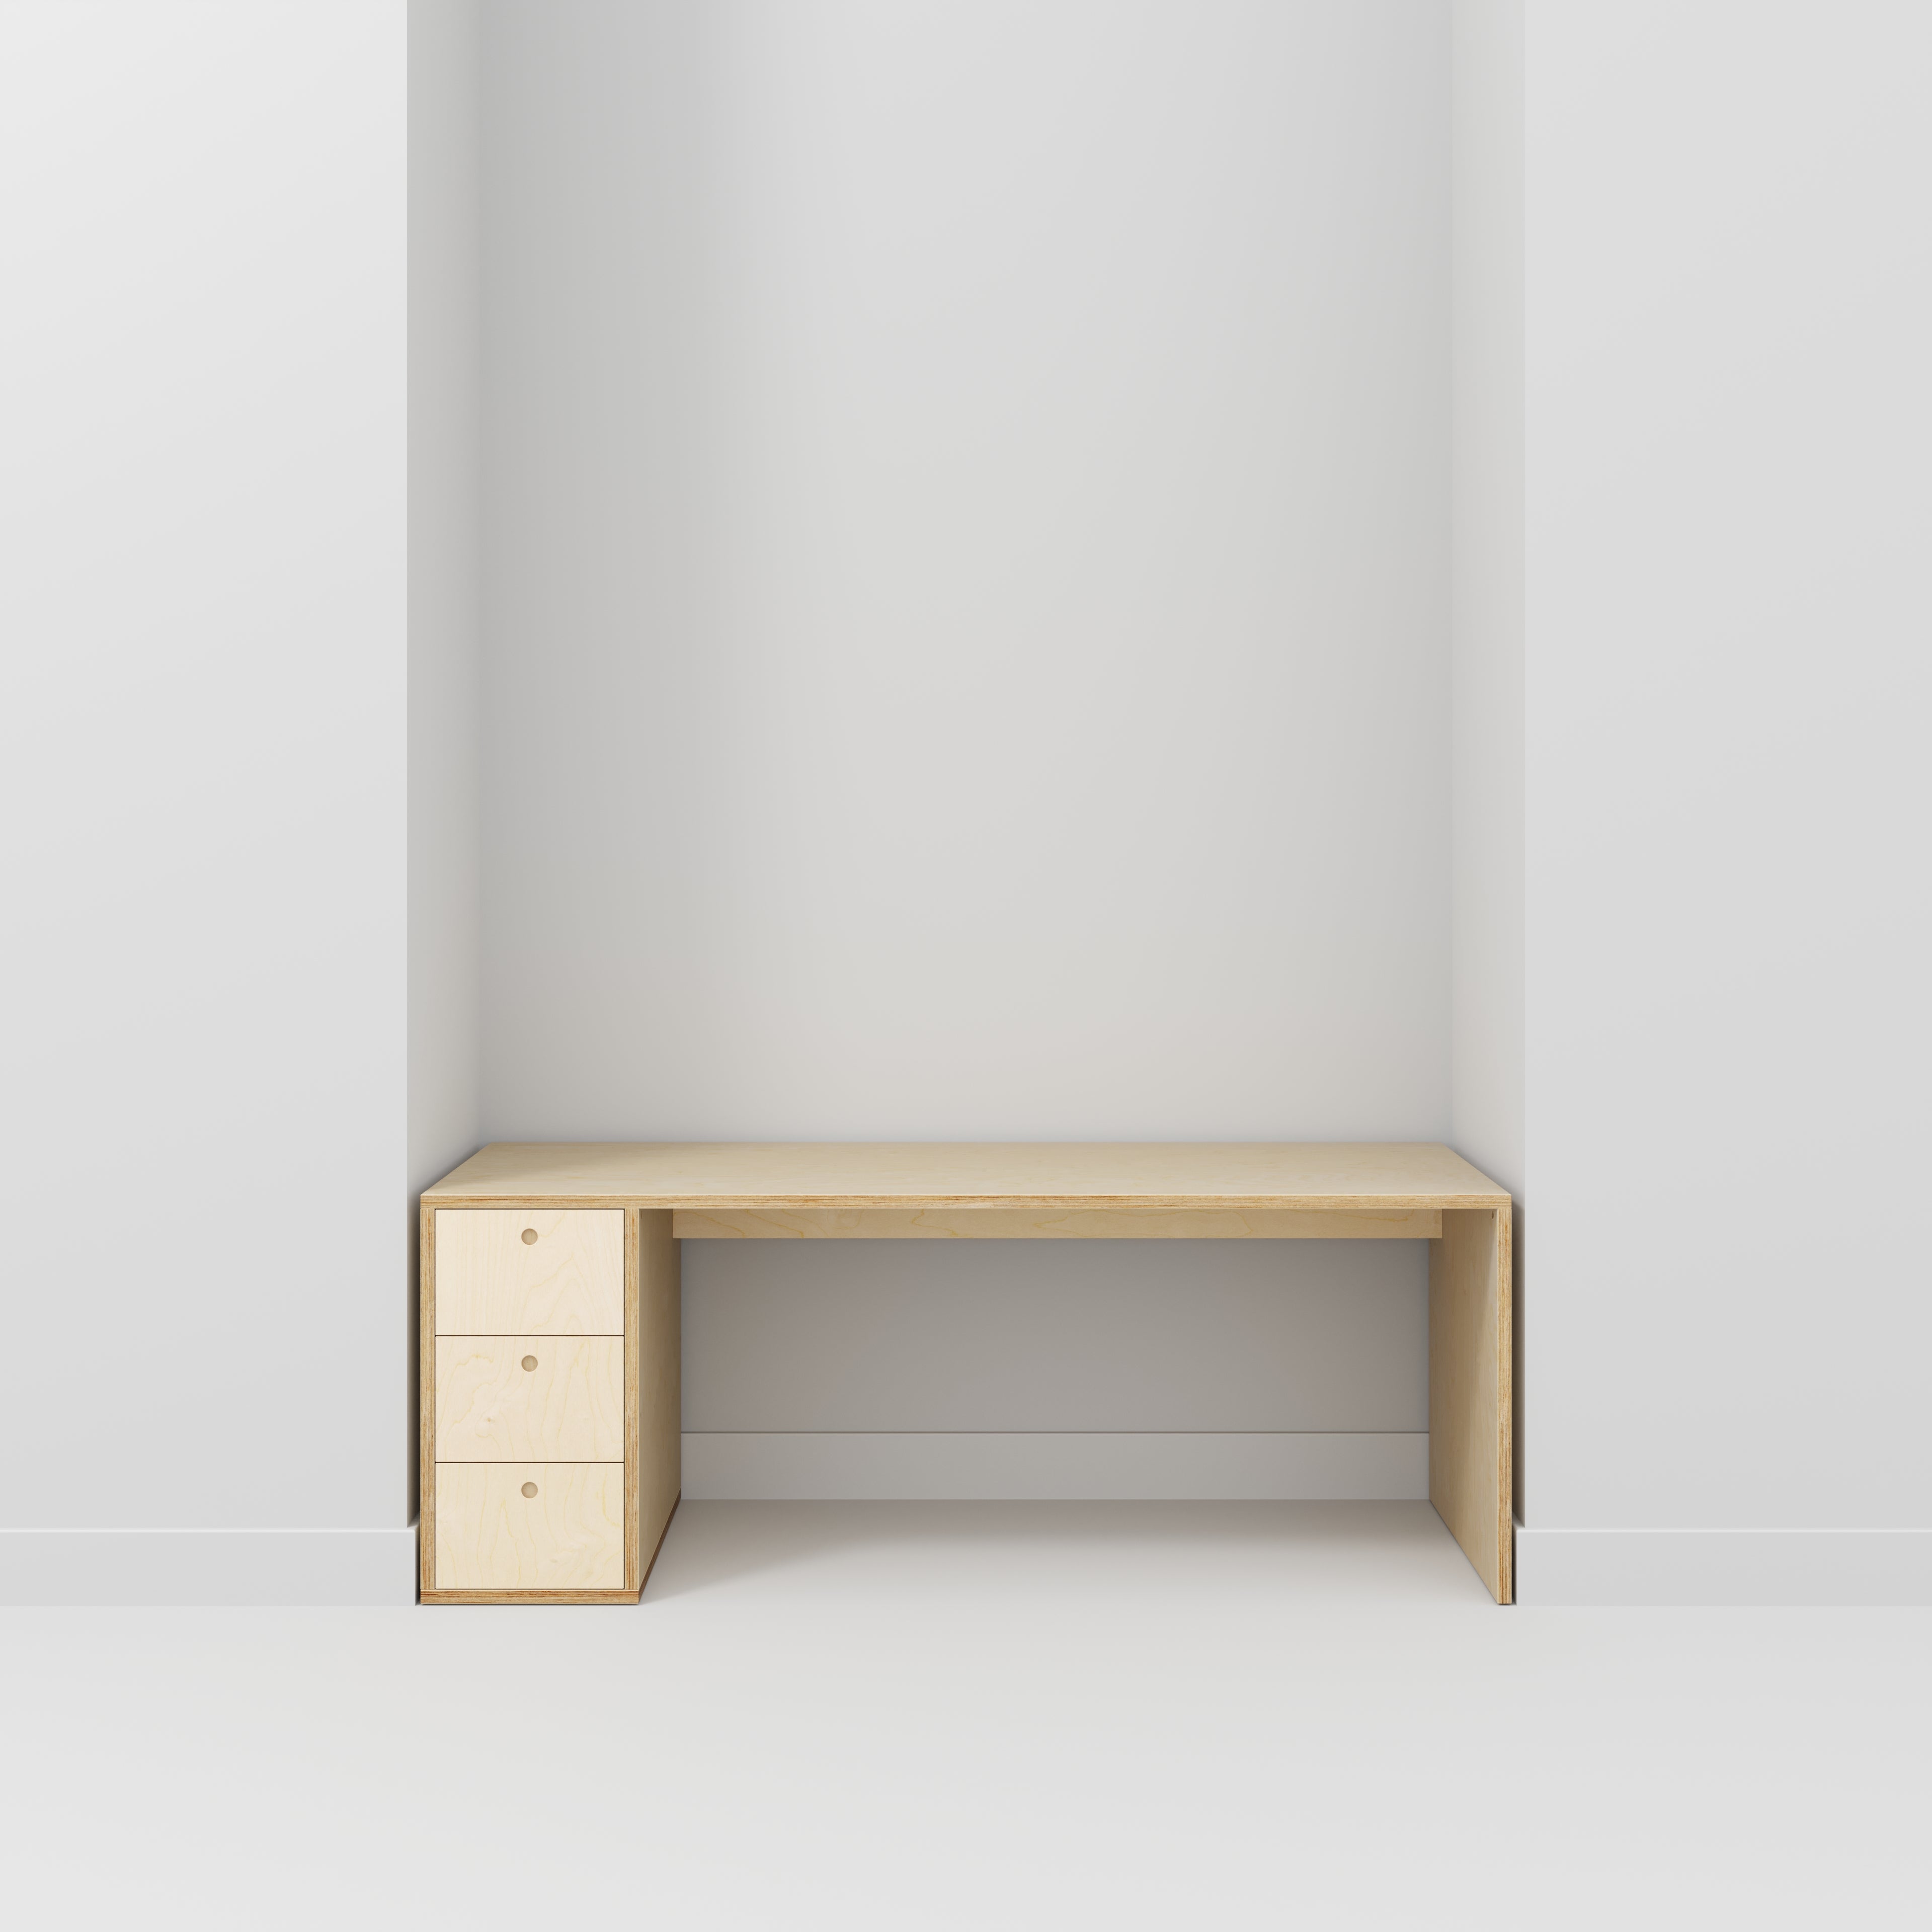 birch plywood desk with storage